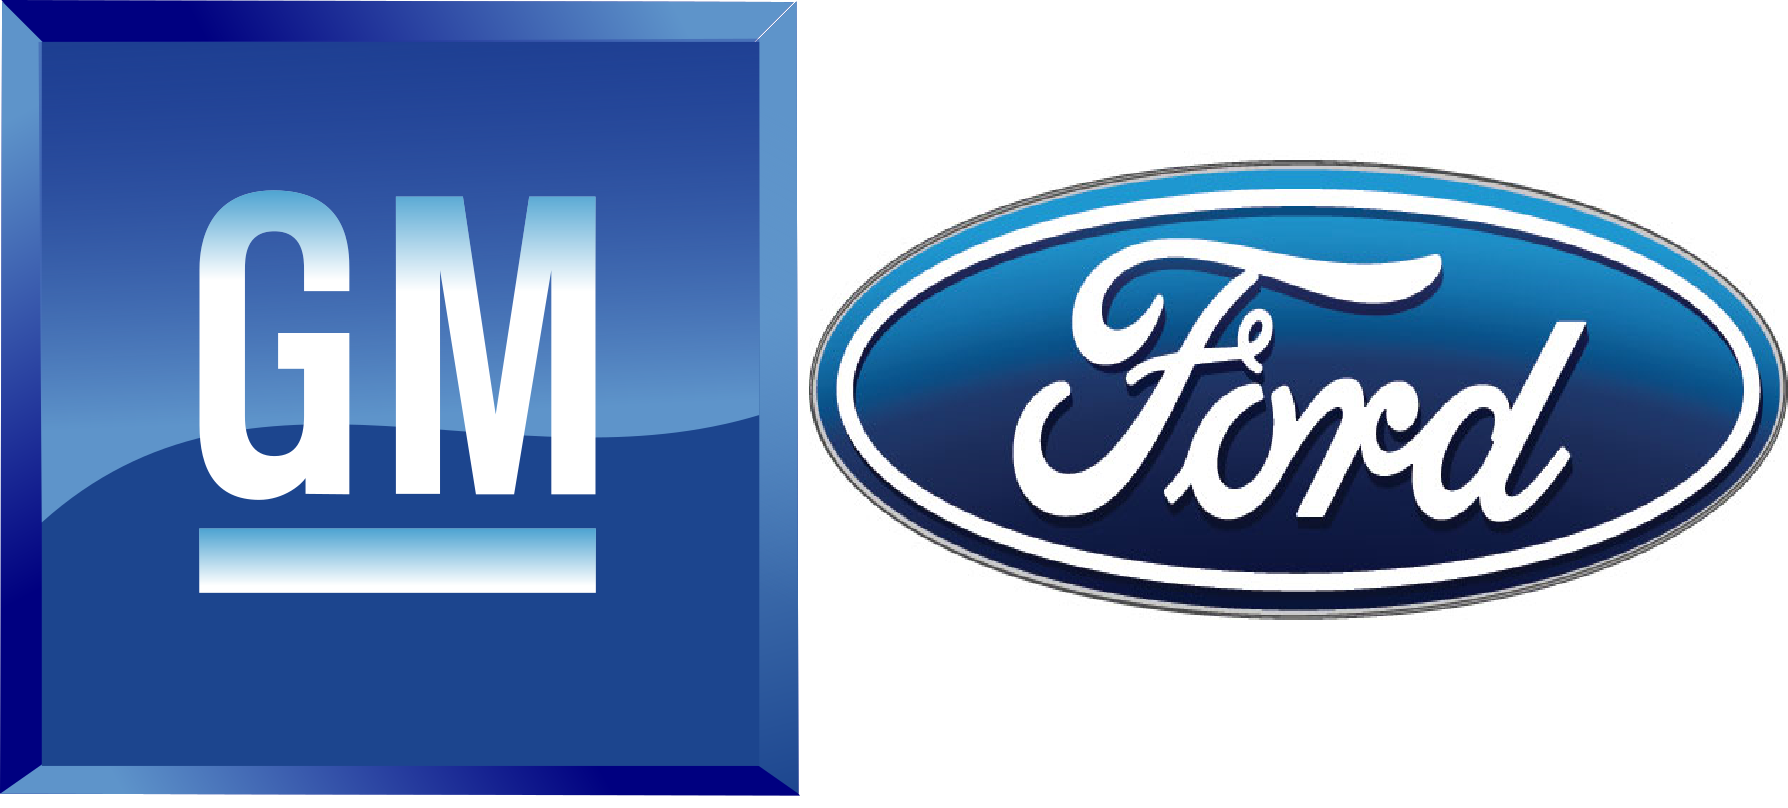 Η Ford και η GM αντέχουν να είναι αισιόδοξες